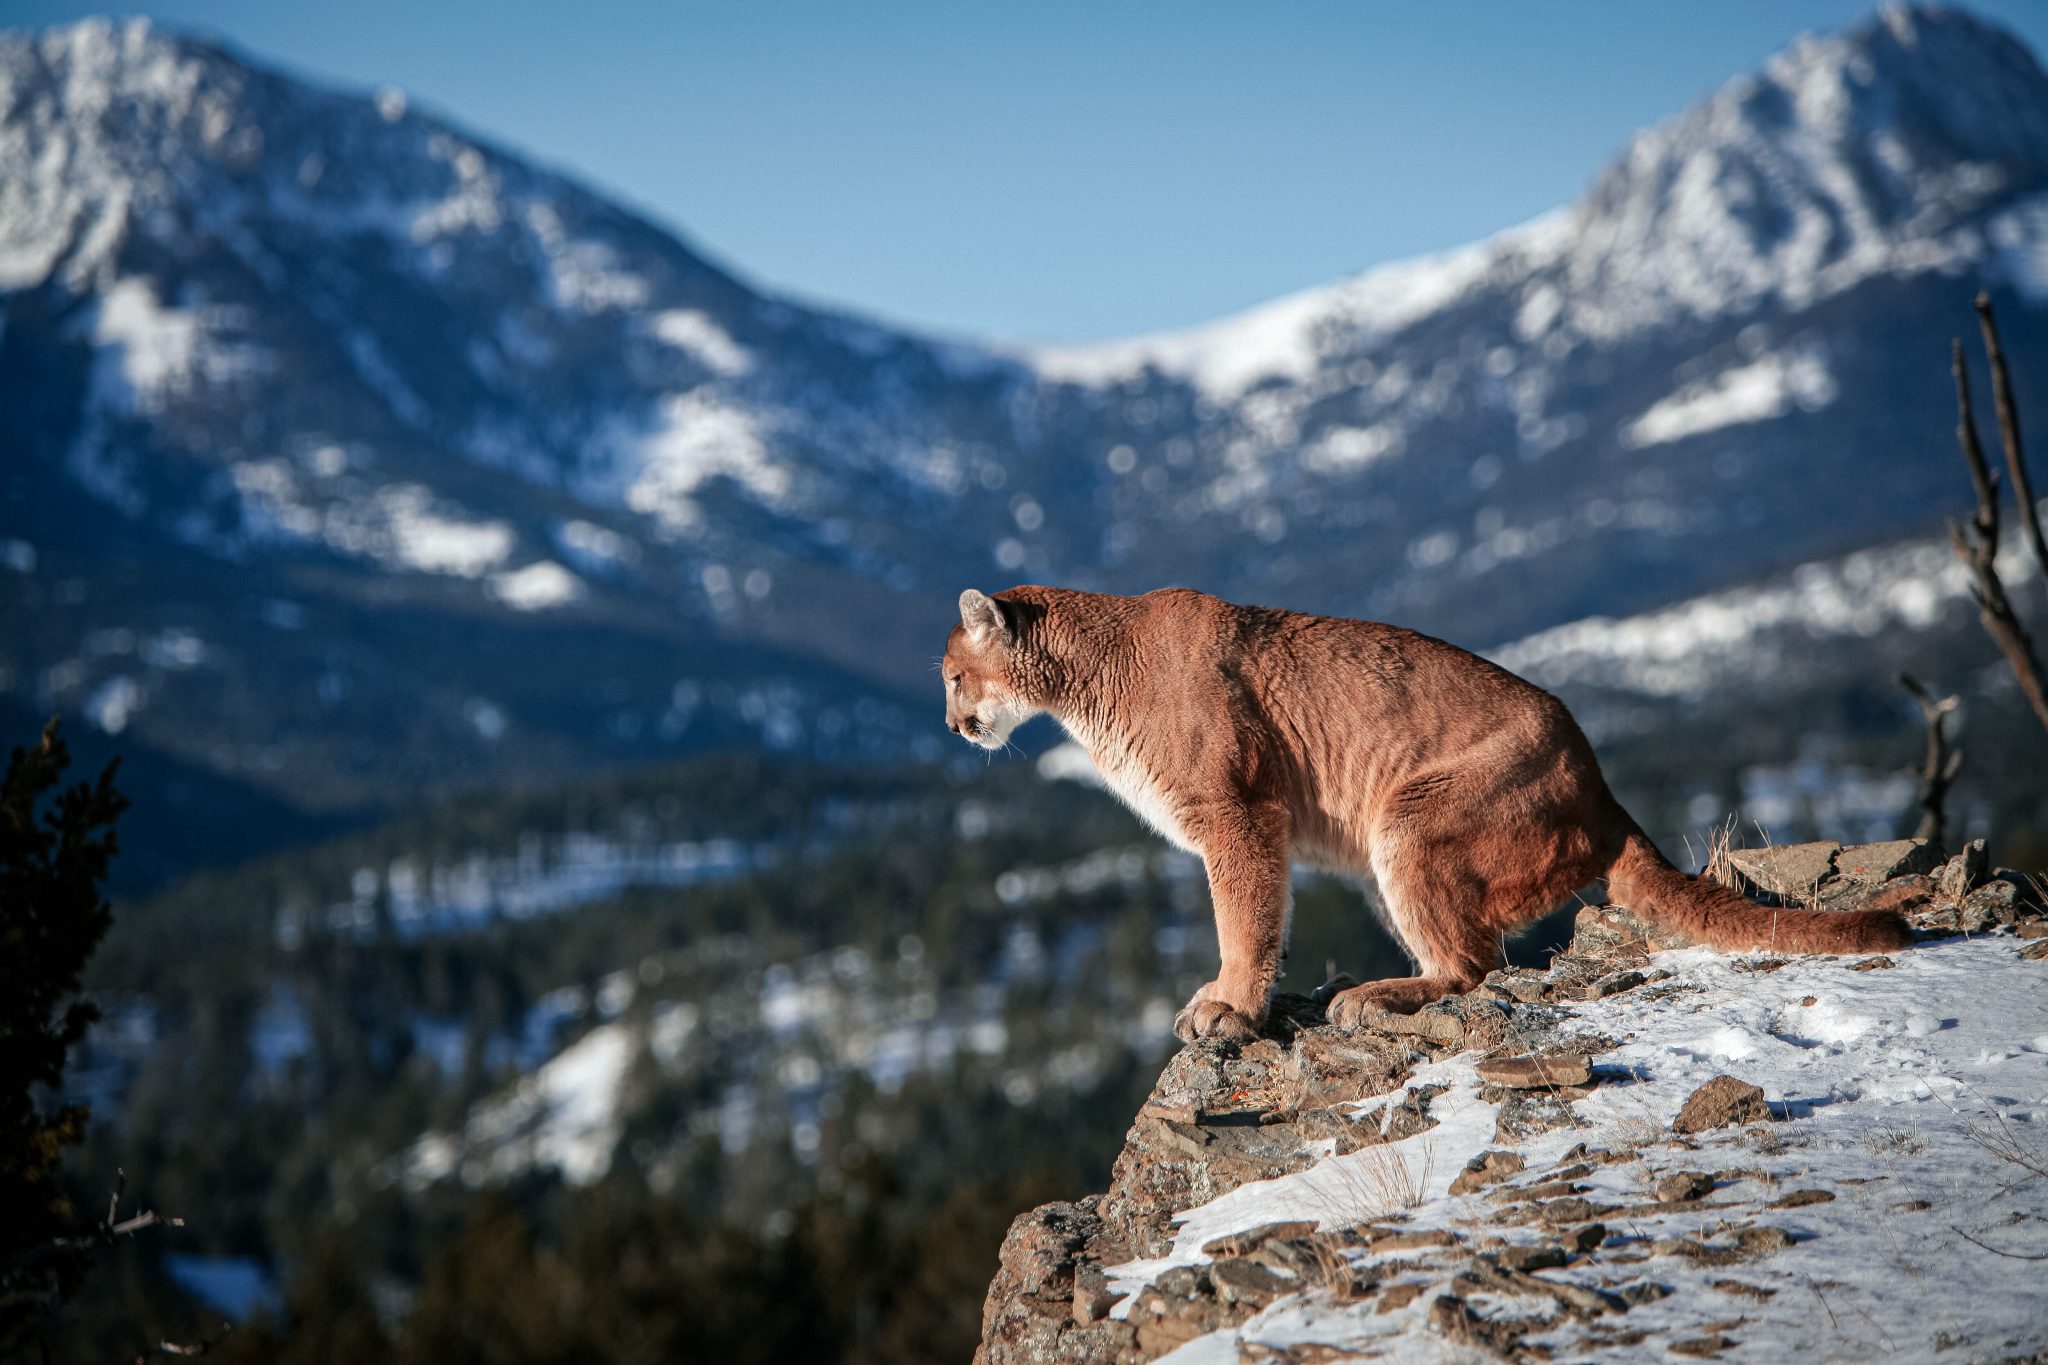 Colorado mountain lion